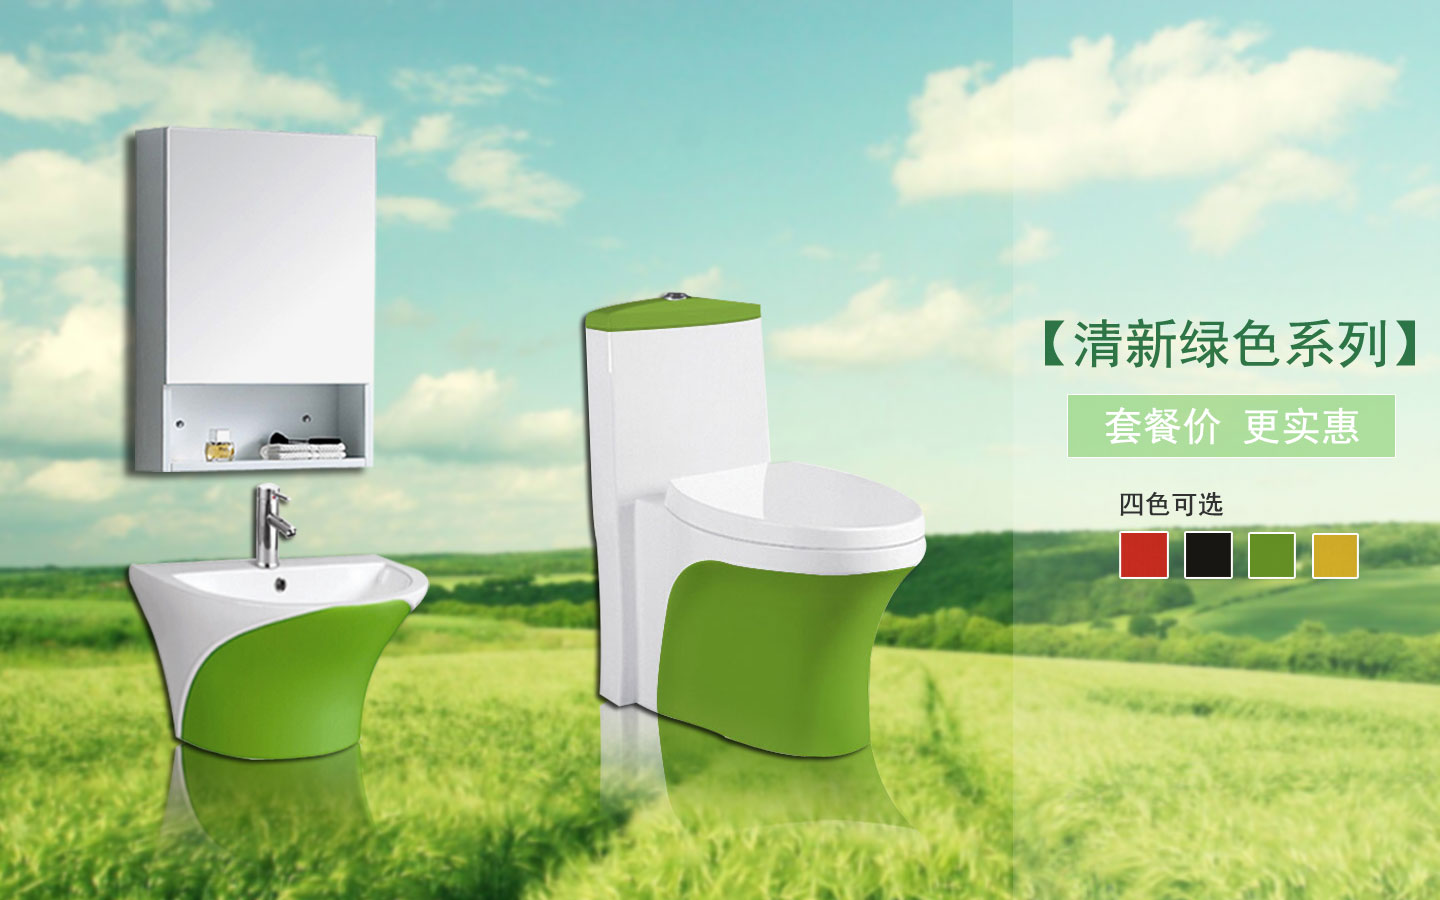 潮州卫浴厂家直销彩色套装8033+P349清新绿色系列